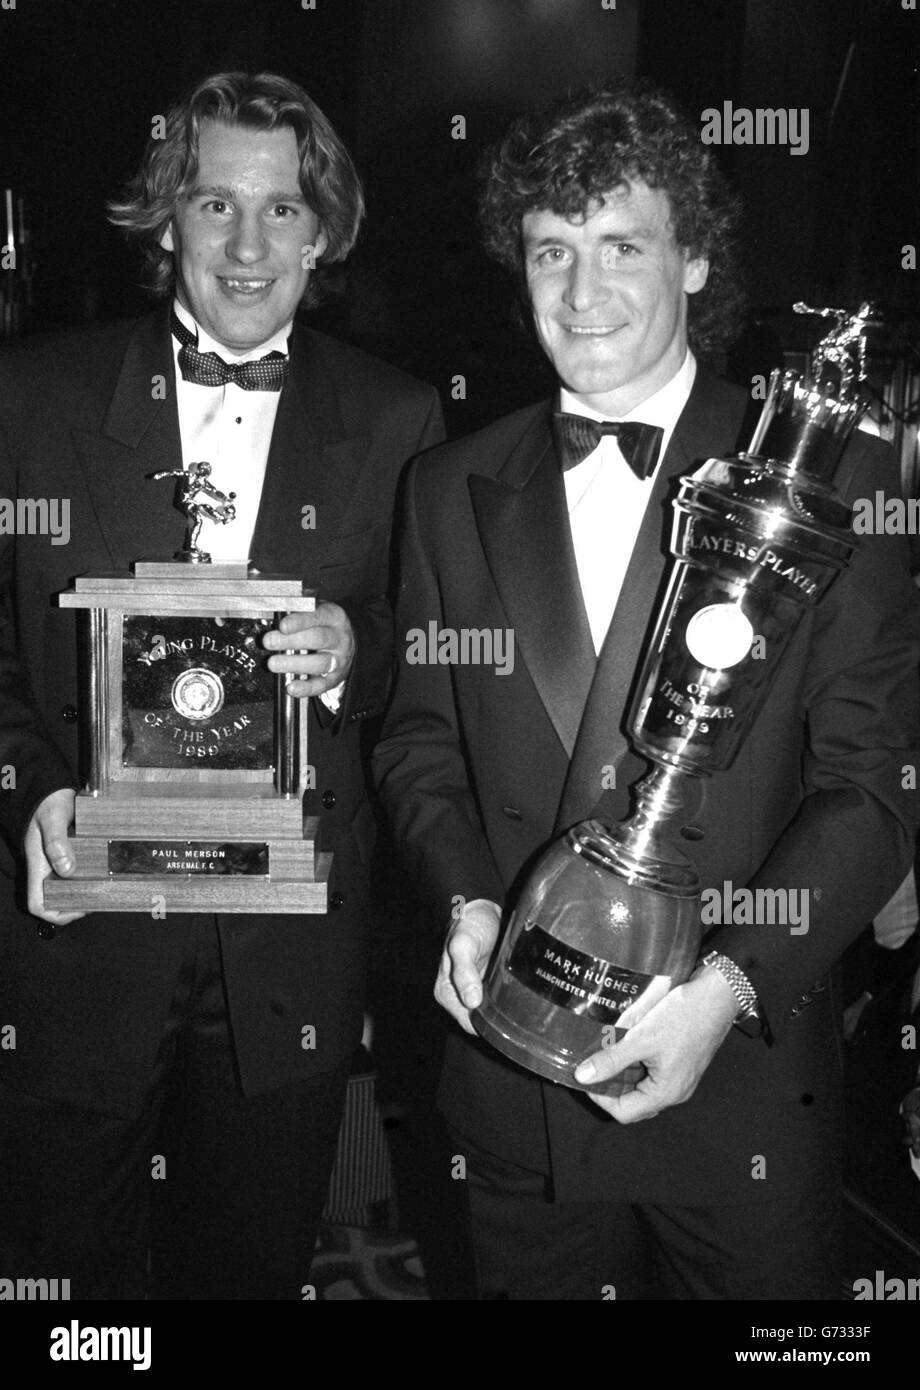 Arsenal-Stürmer Paul Merson (links) und Mark Hughes von Manchester United mit ihren Auszeichnungen im Londoner Hilton Hotel, als die Professional Footballers' Association Merson zum Young Player of the Year und Hughes zum Player of the Year kürte. Stockfoto